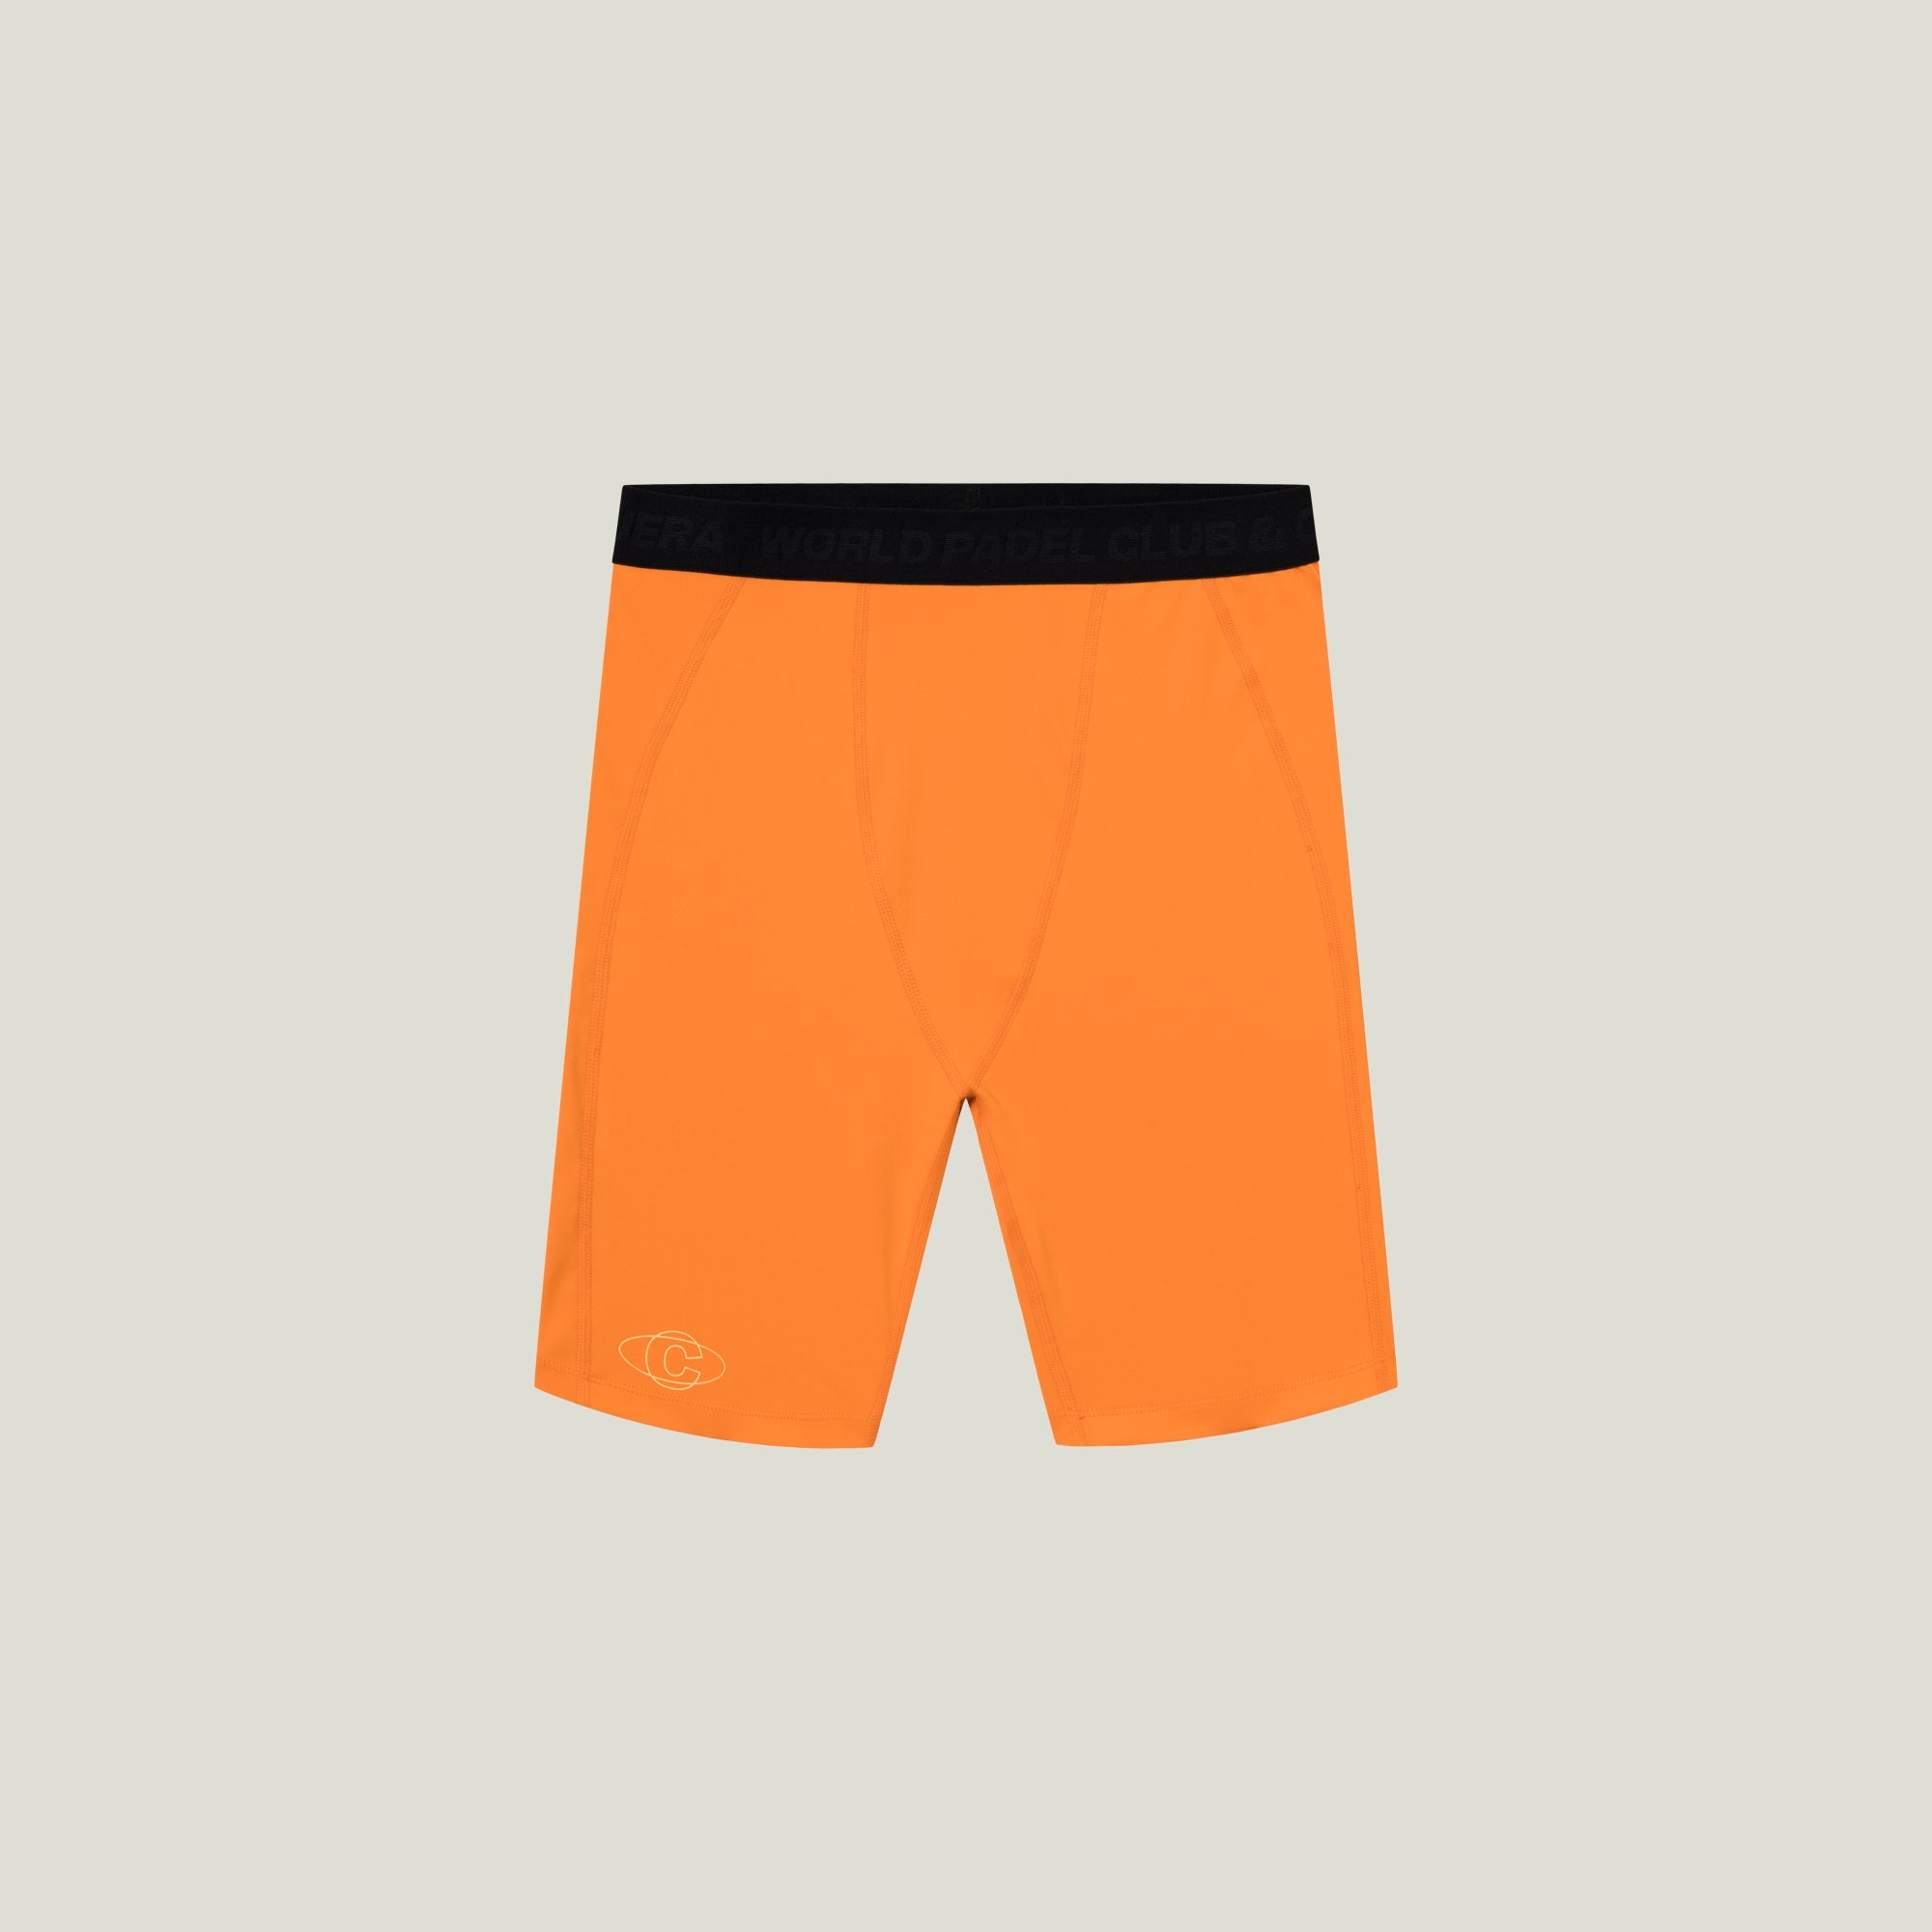 Cuera Oncourt Layer Tights (Orange) - XXL